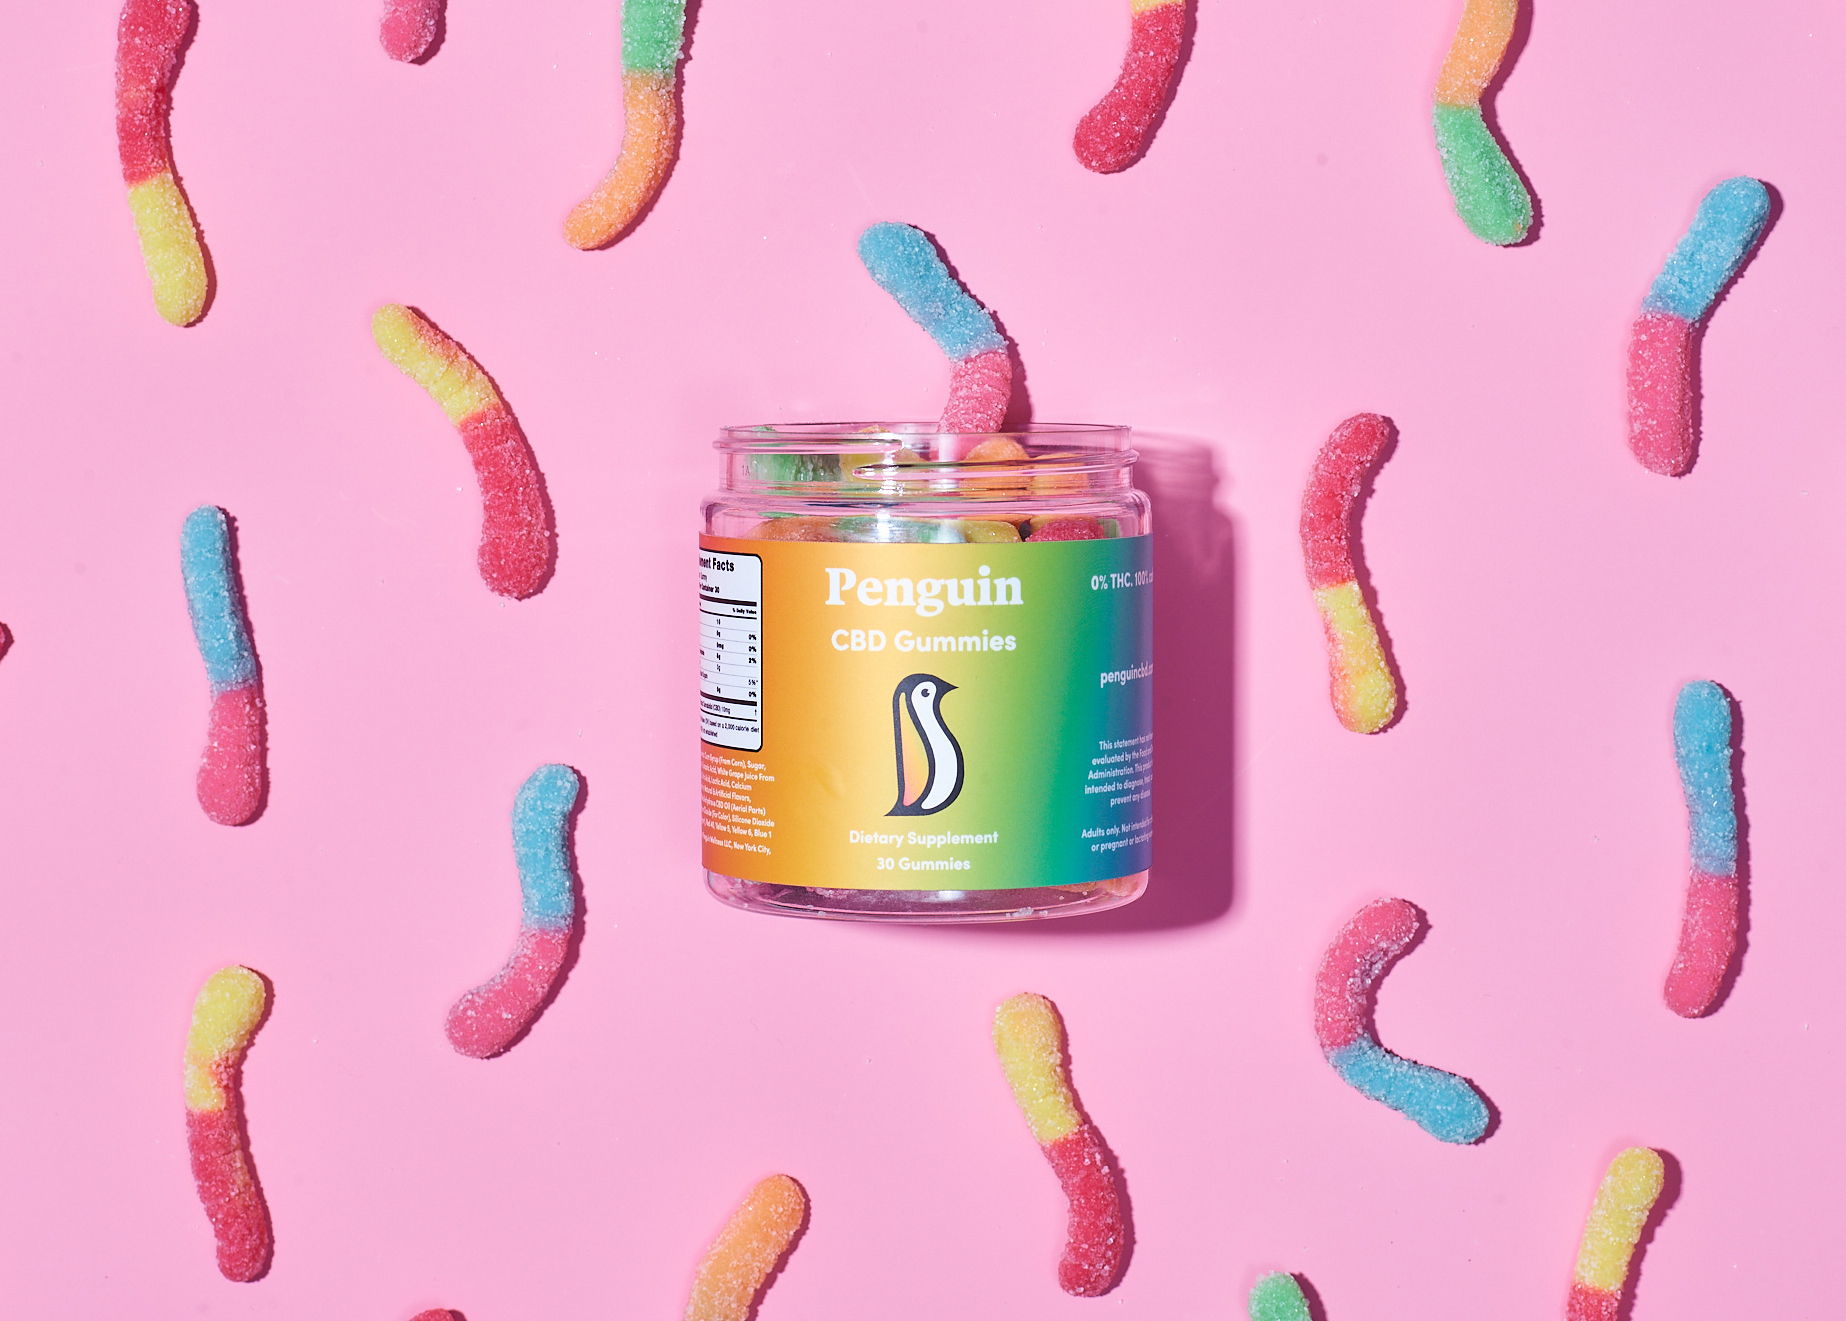 20 Best Full Spectrum CBD Gummies Discover Magazine